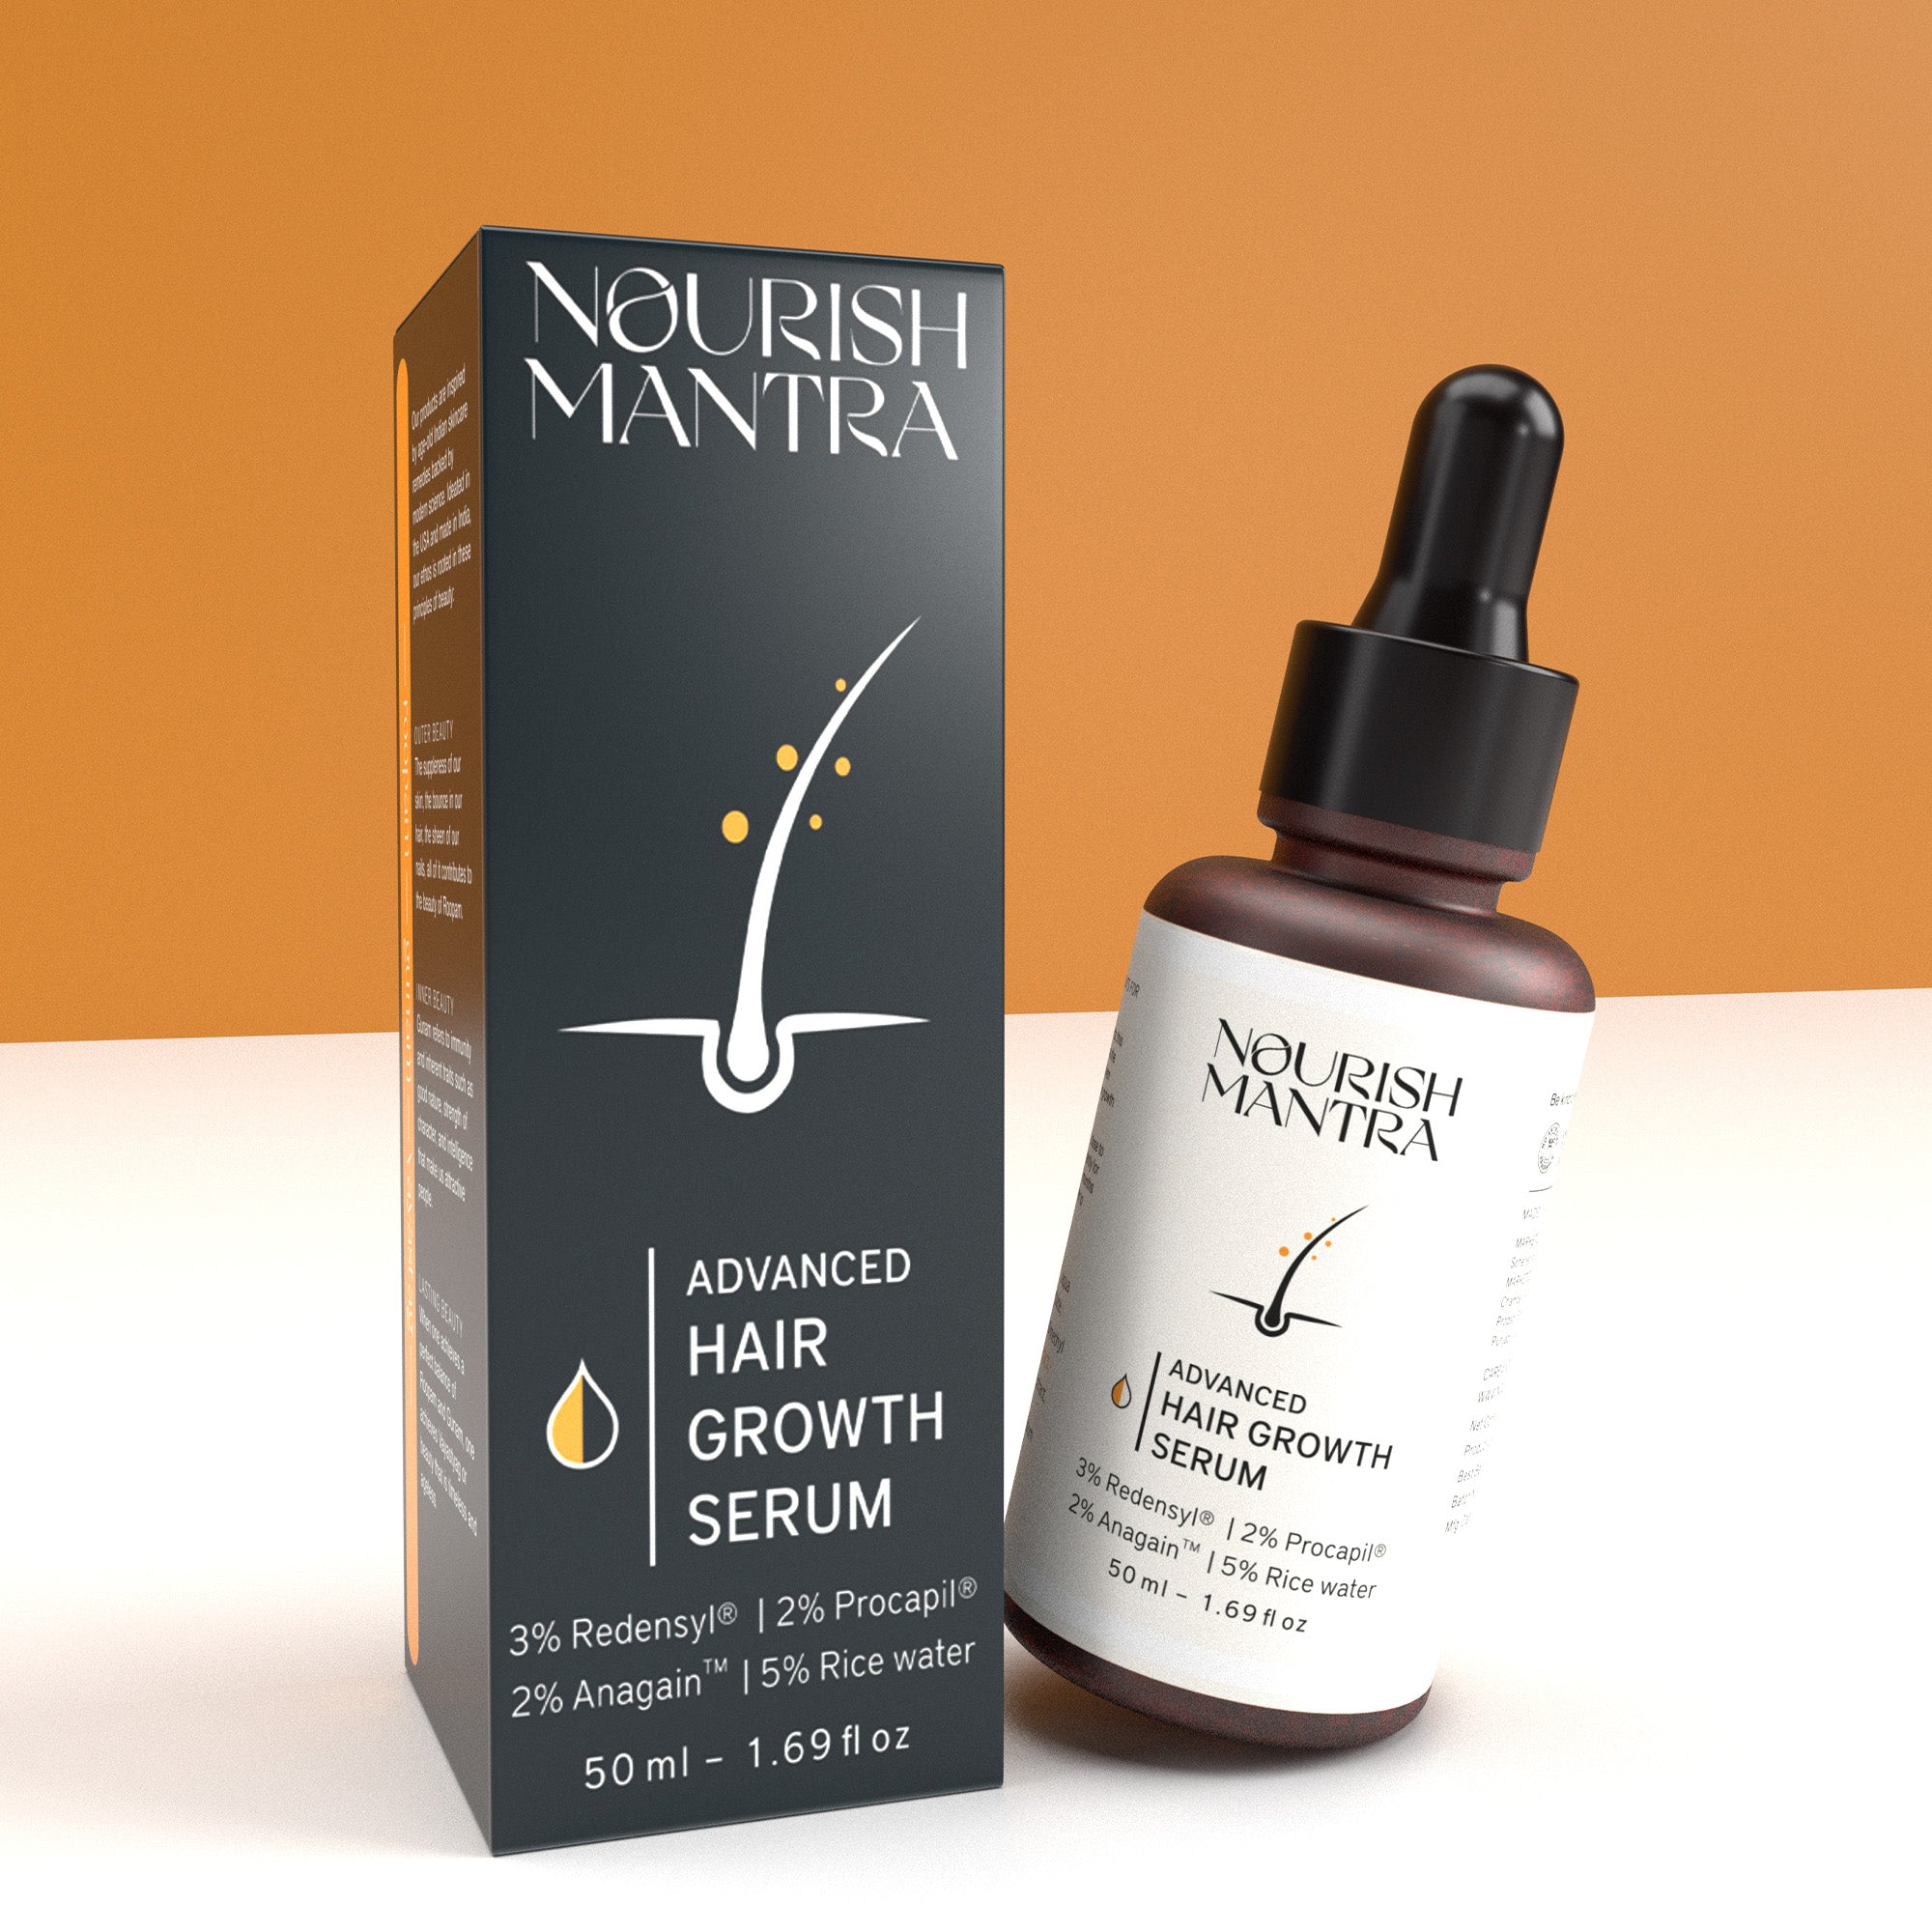 Advanced hair growth serum